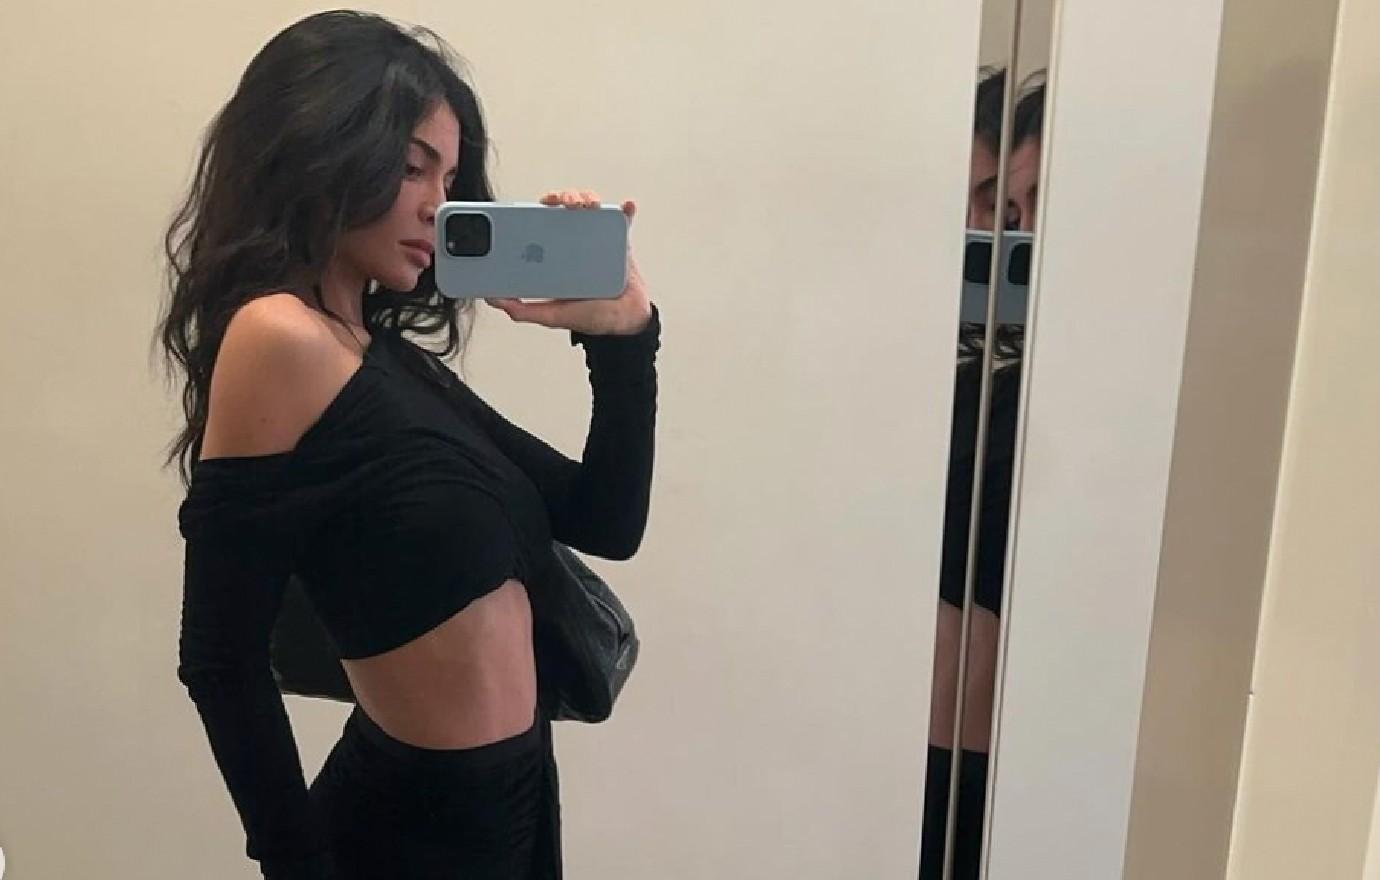 Kylie Jenner wears just her panties and crop top in Instagram selfie